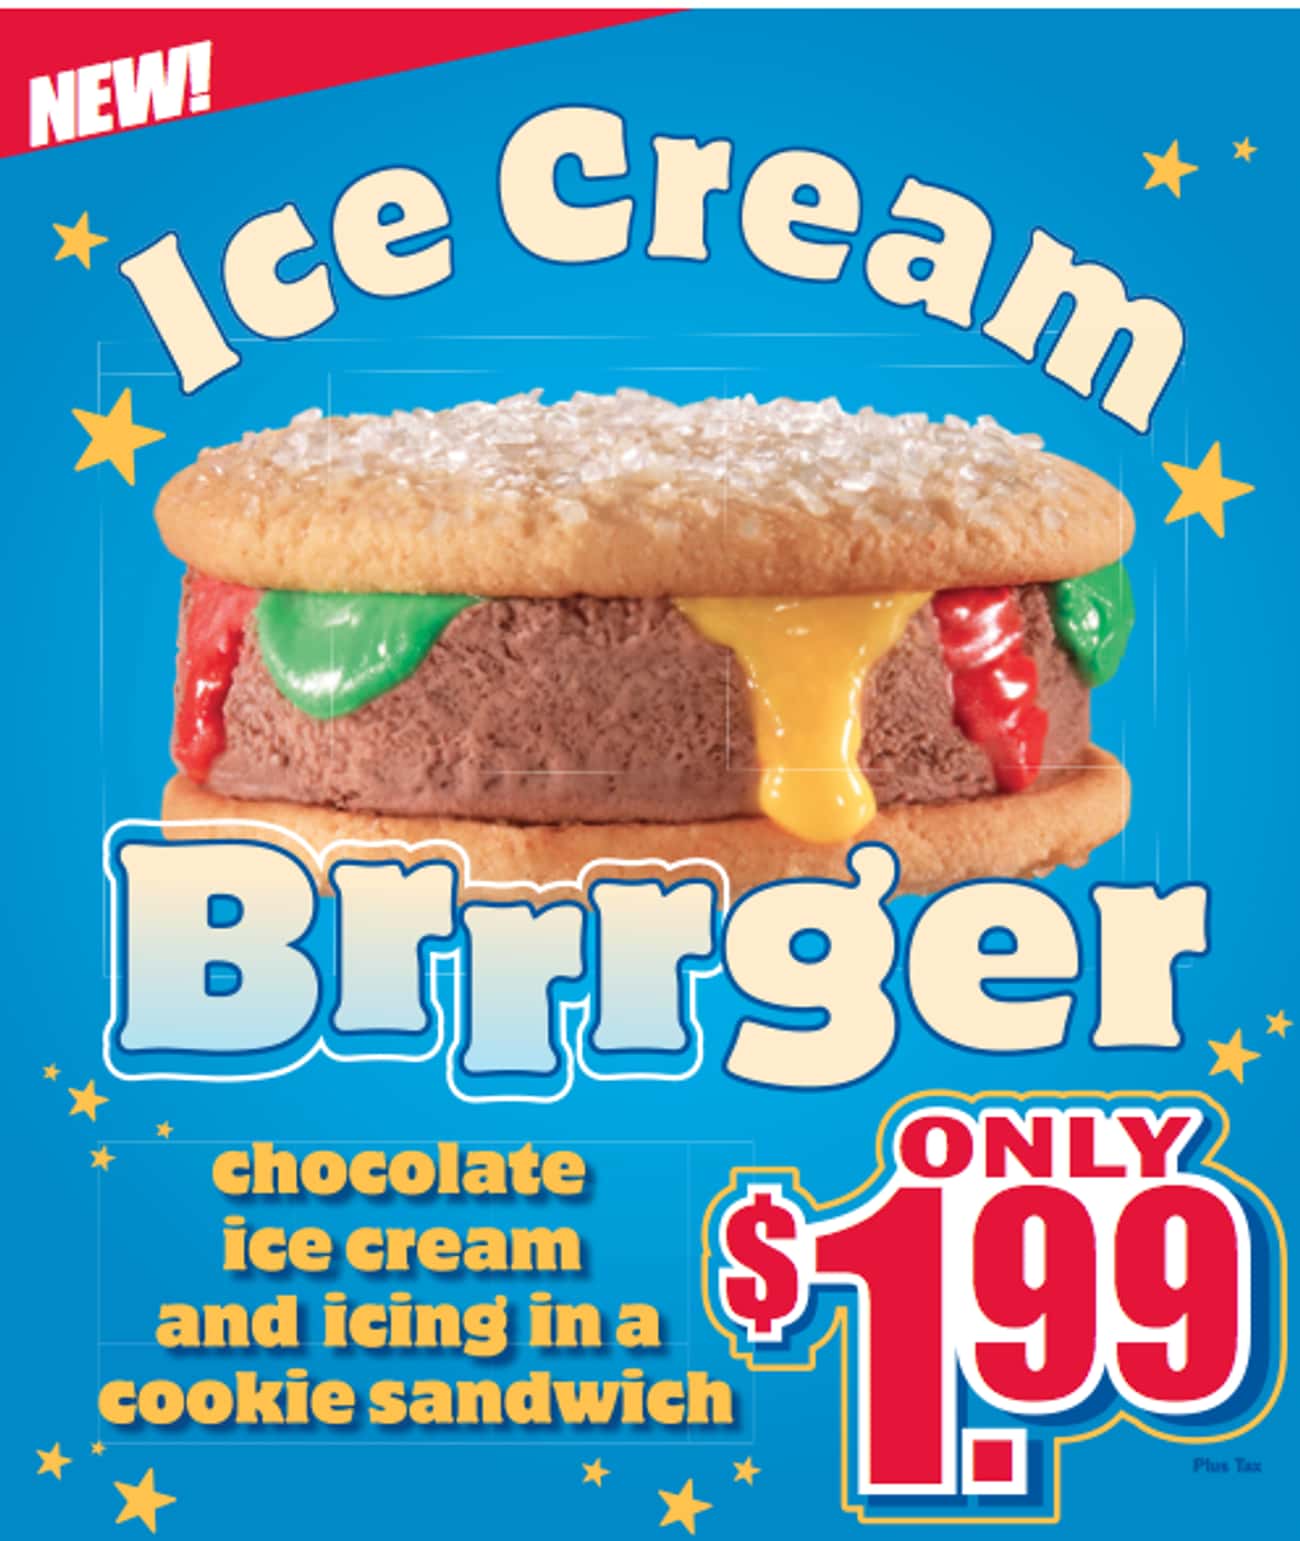 День сэндвич мороженого 2 августа. Сюрприз айс бургер. День сэндвич мороженого 2 августа картинки. Бургер Кинг мороженое. Онли айс